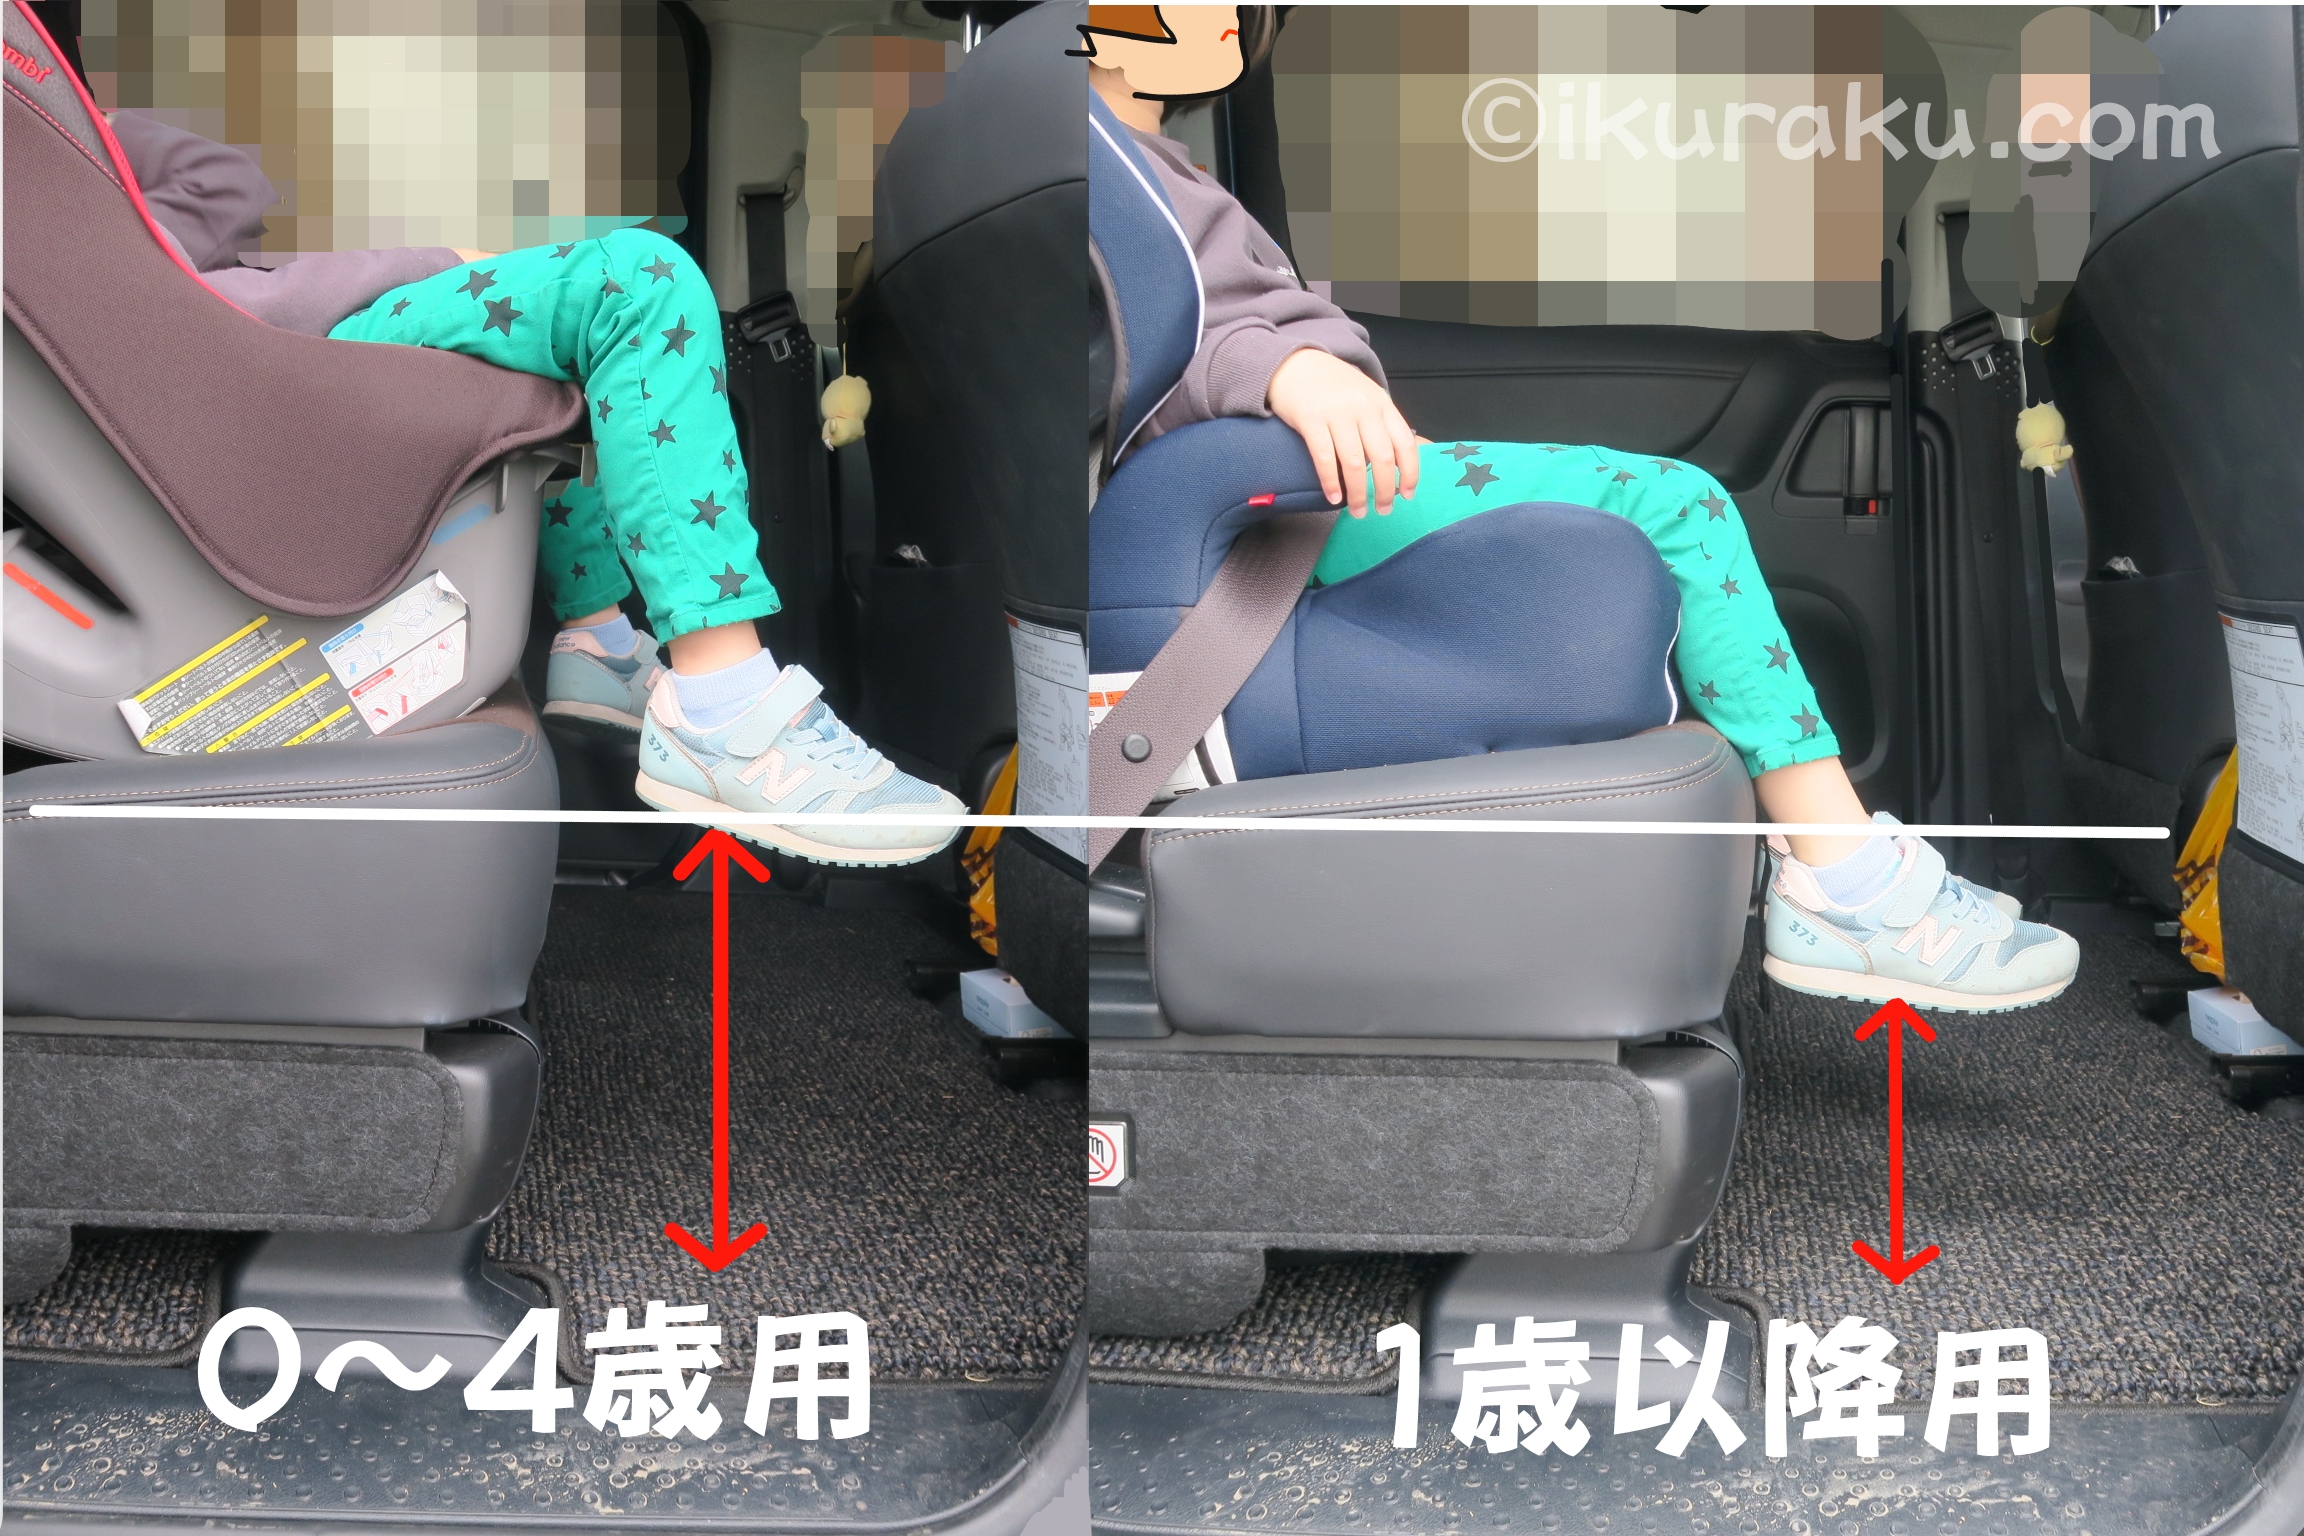 0～4歳用のチャイルドシートと1歳以降用のチャイルドシートに座った場合の床までの距離比較